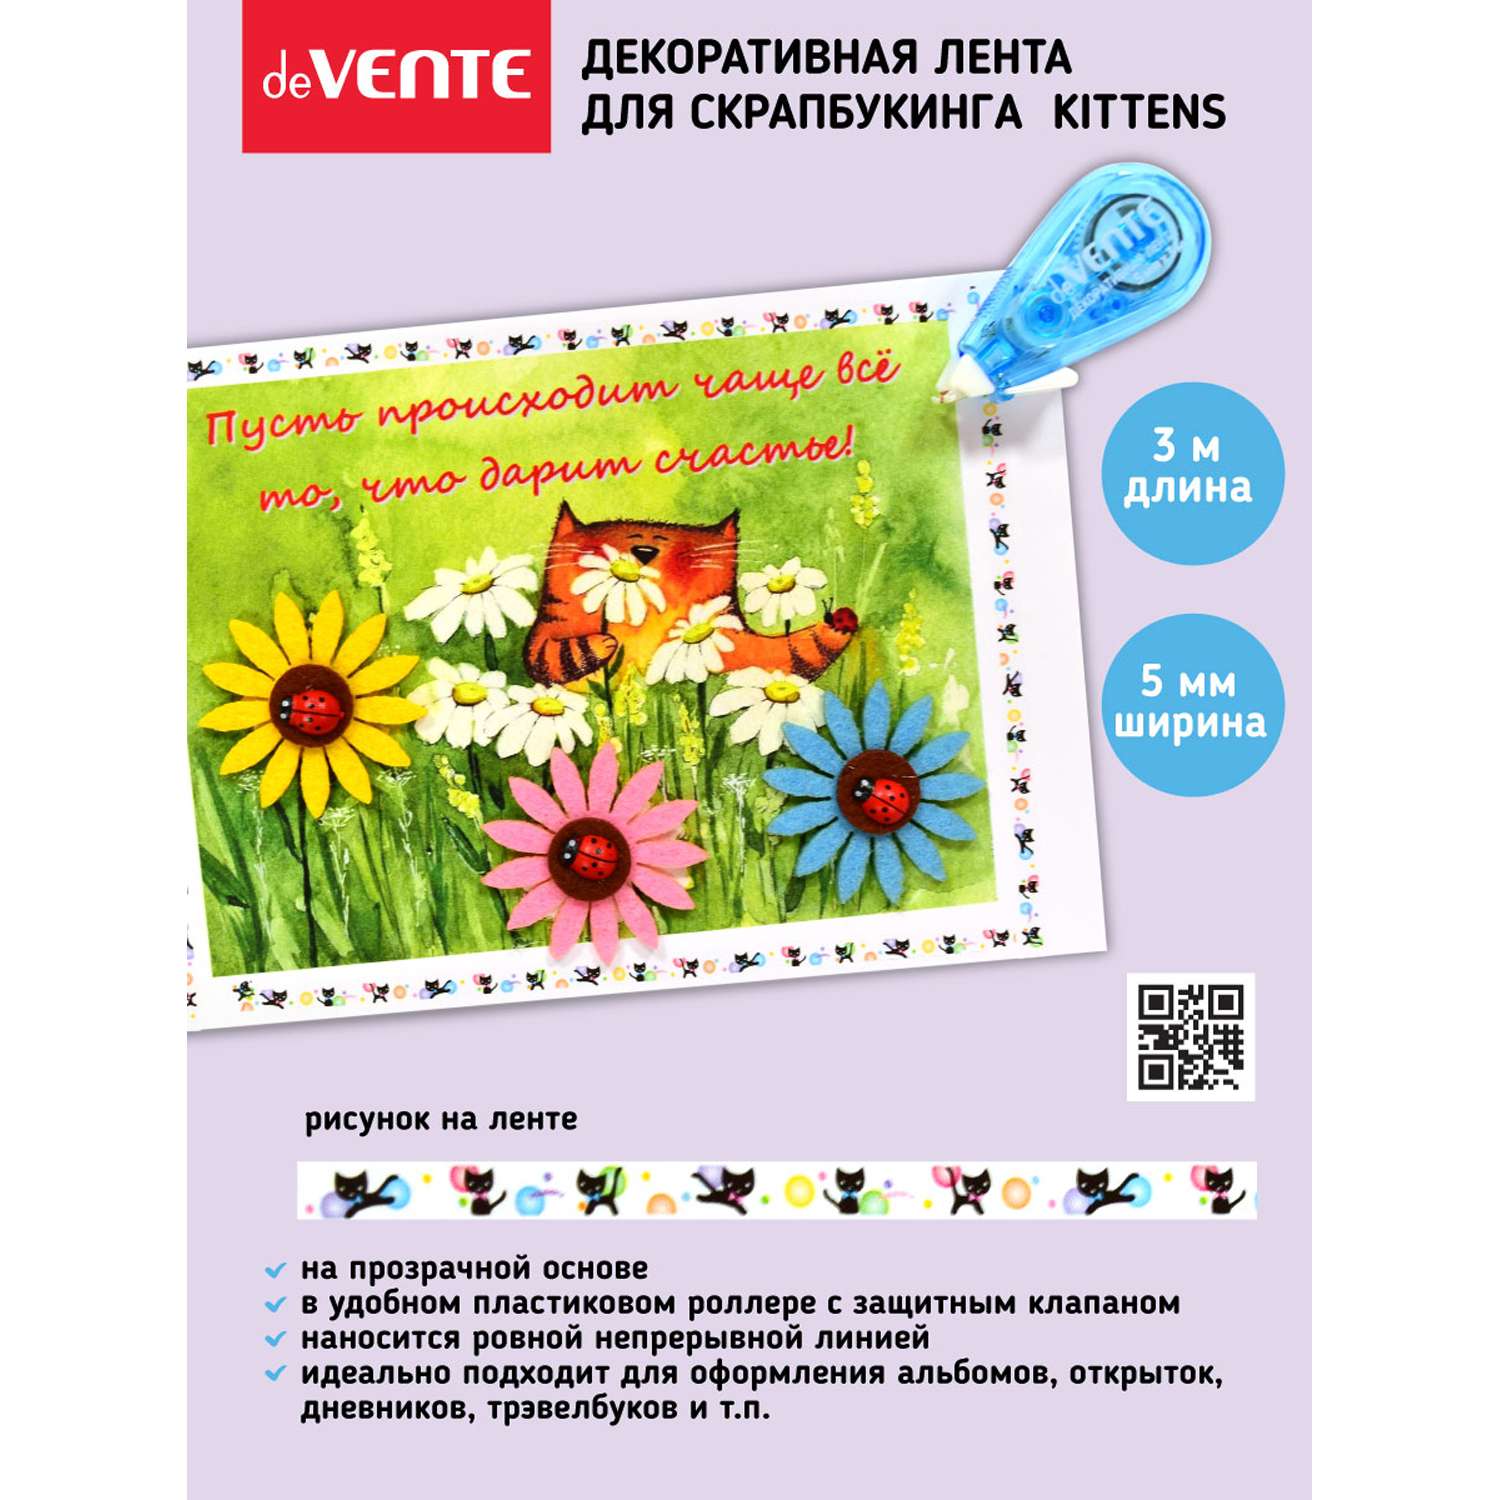 Декоративная лента deVENTE для декорирования открыток Kittens 3м - фото 2